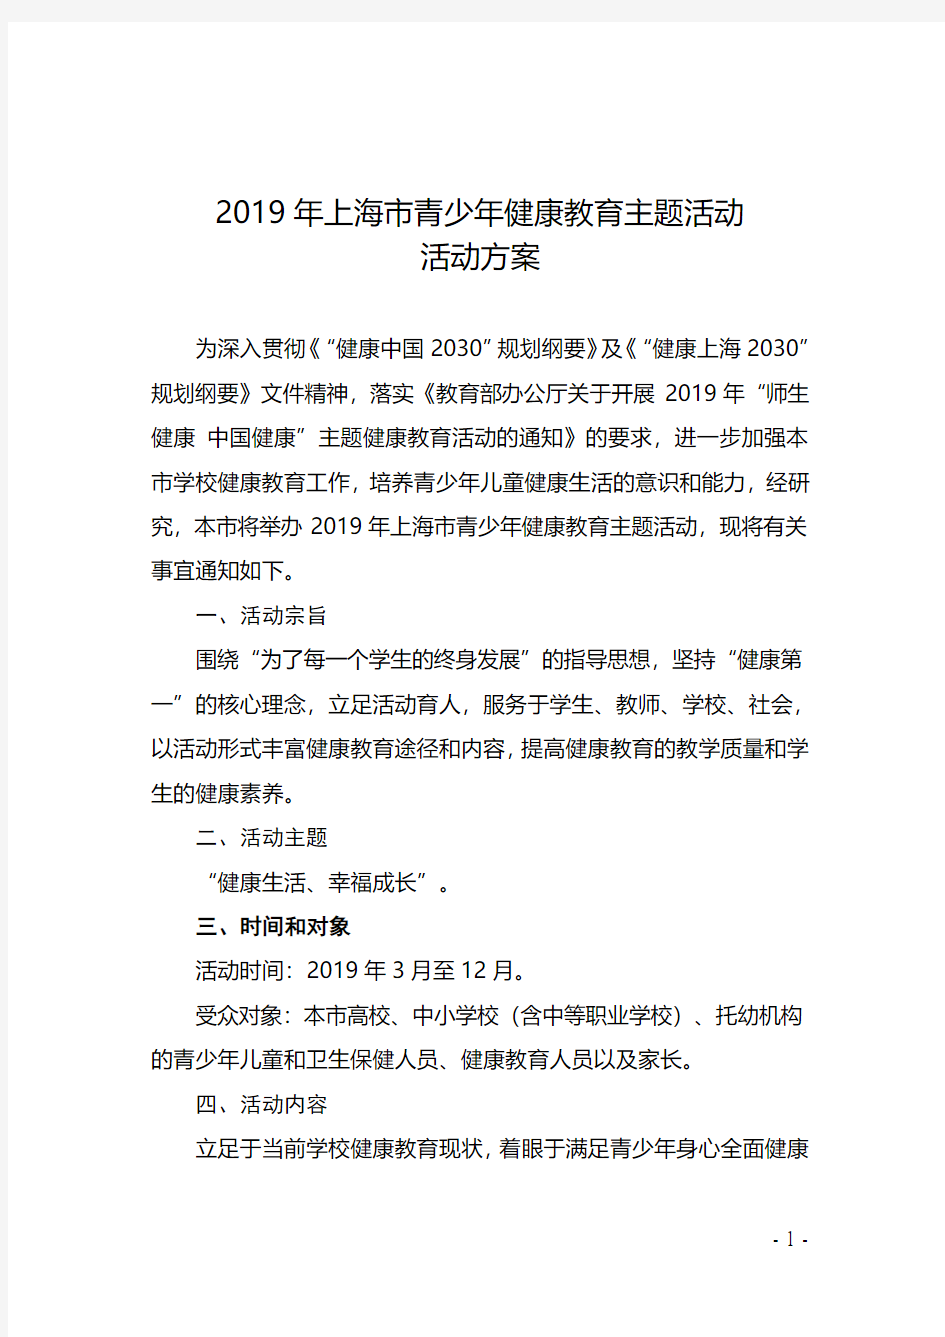 2019年上海青少年健康教育主题活动